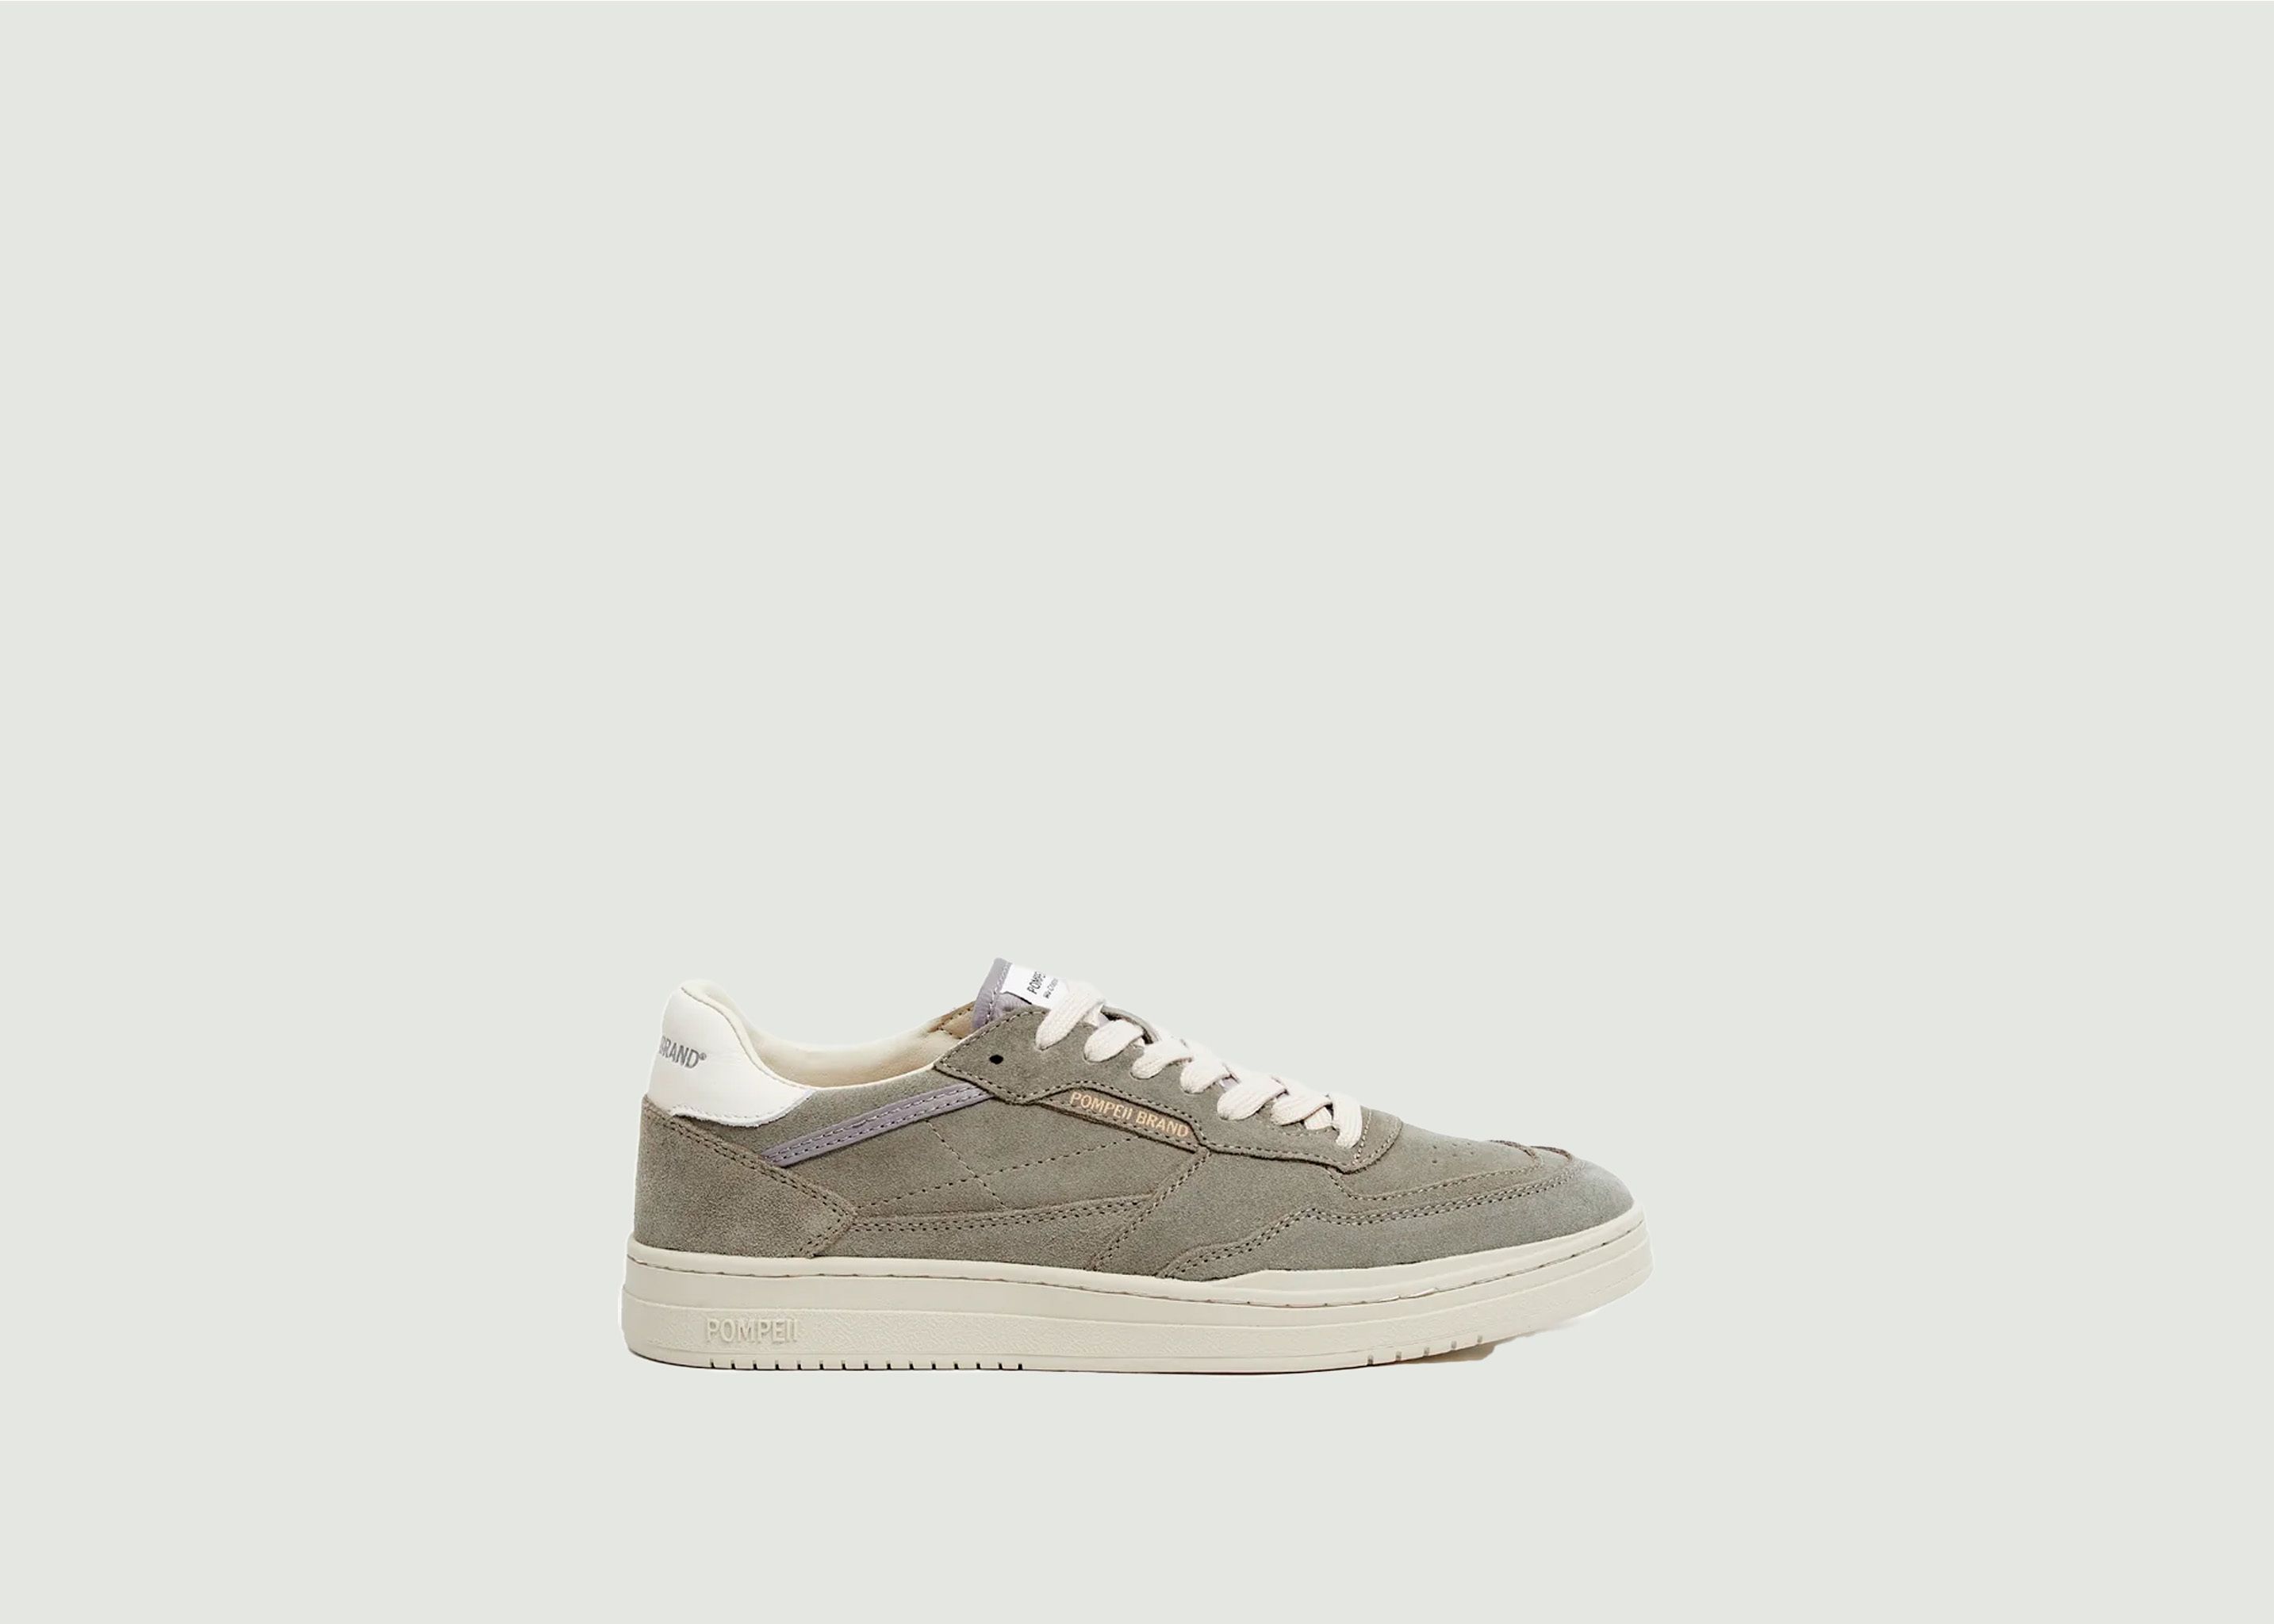 Sneakers Elan Suede - Pompeii Brand